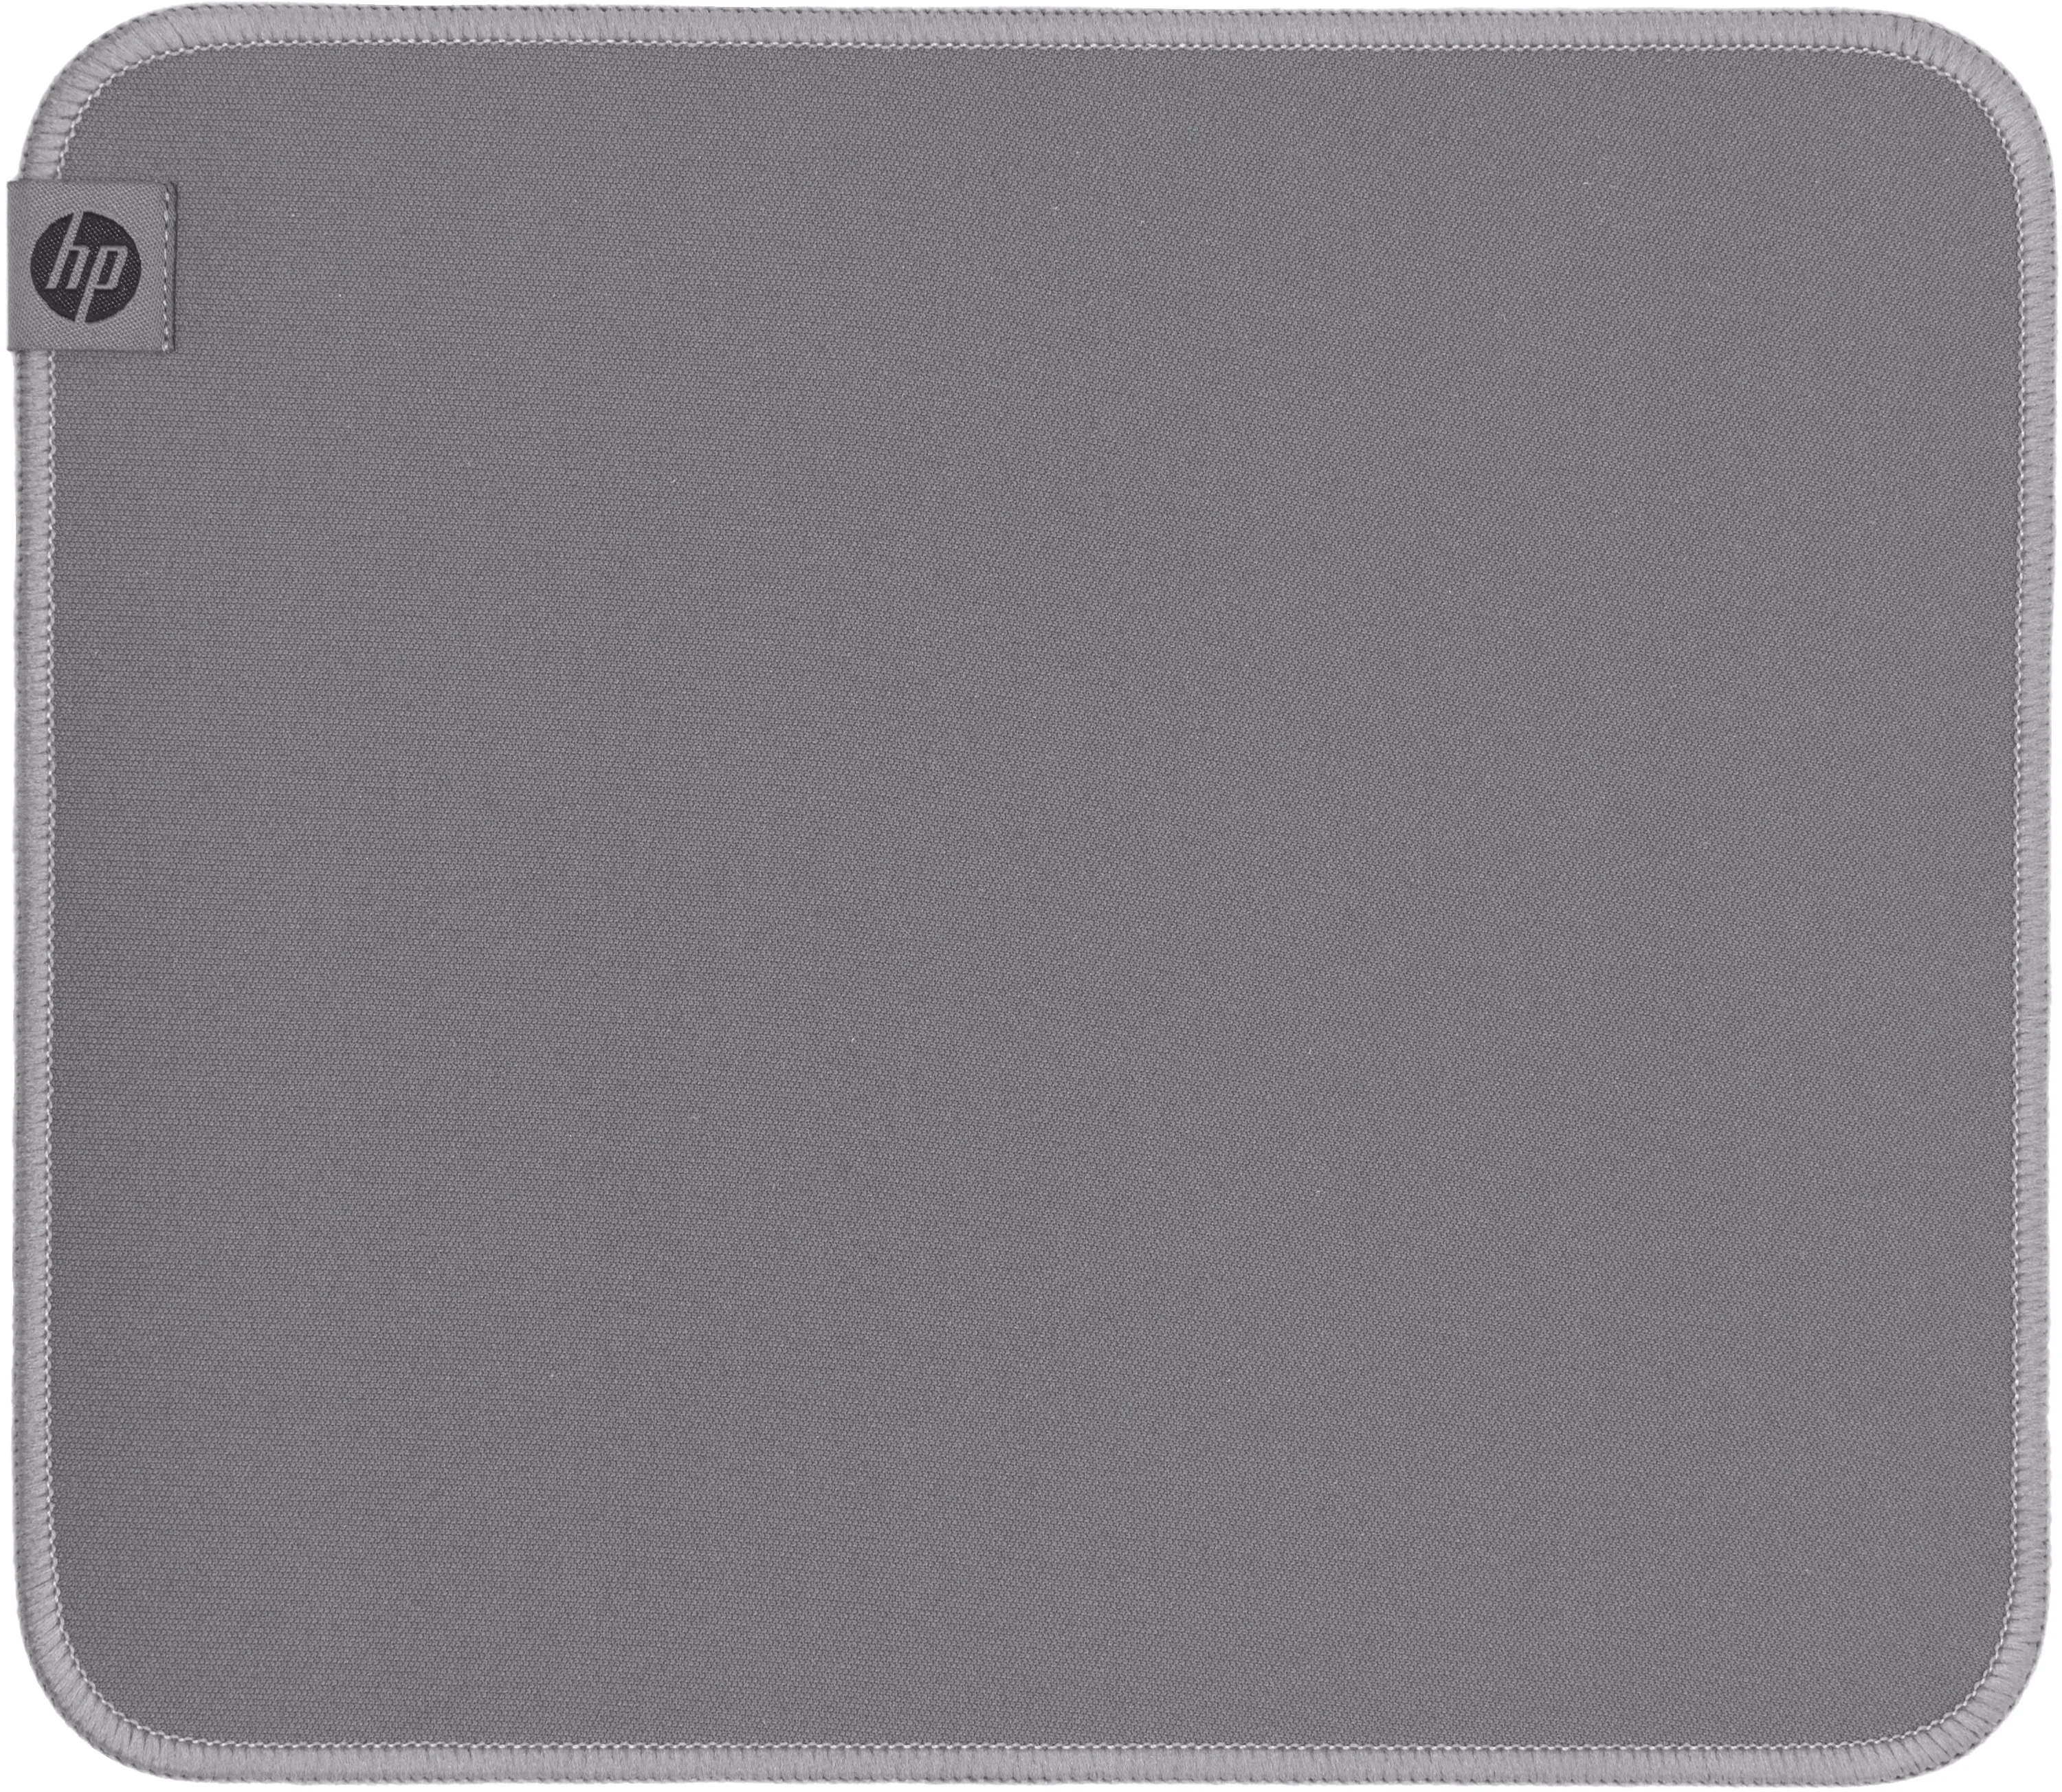 Vente HP 105 Sanitizable Mouse Pad HP au meilleur prix - visuel 8